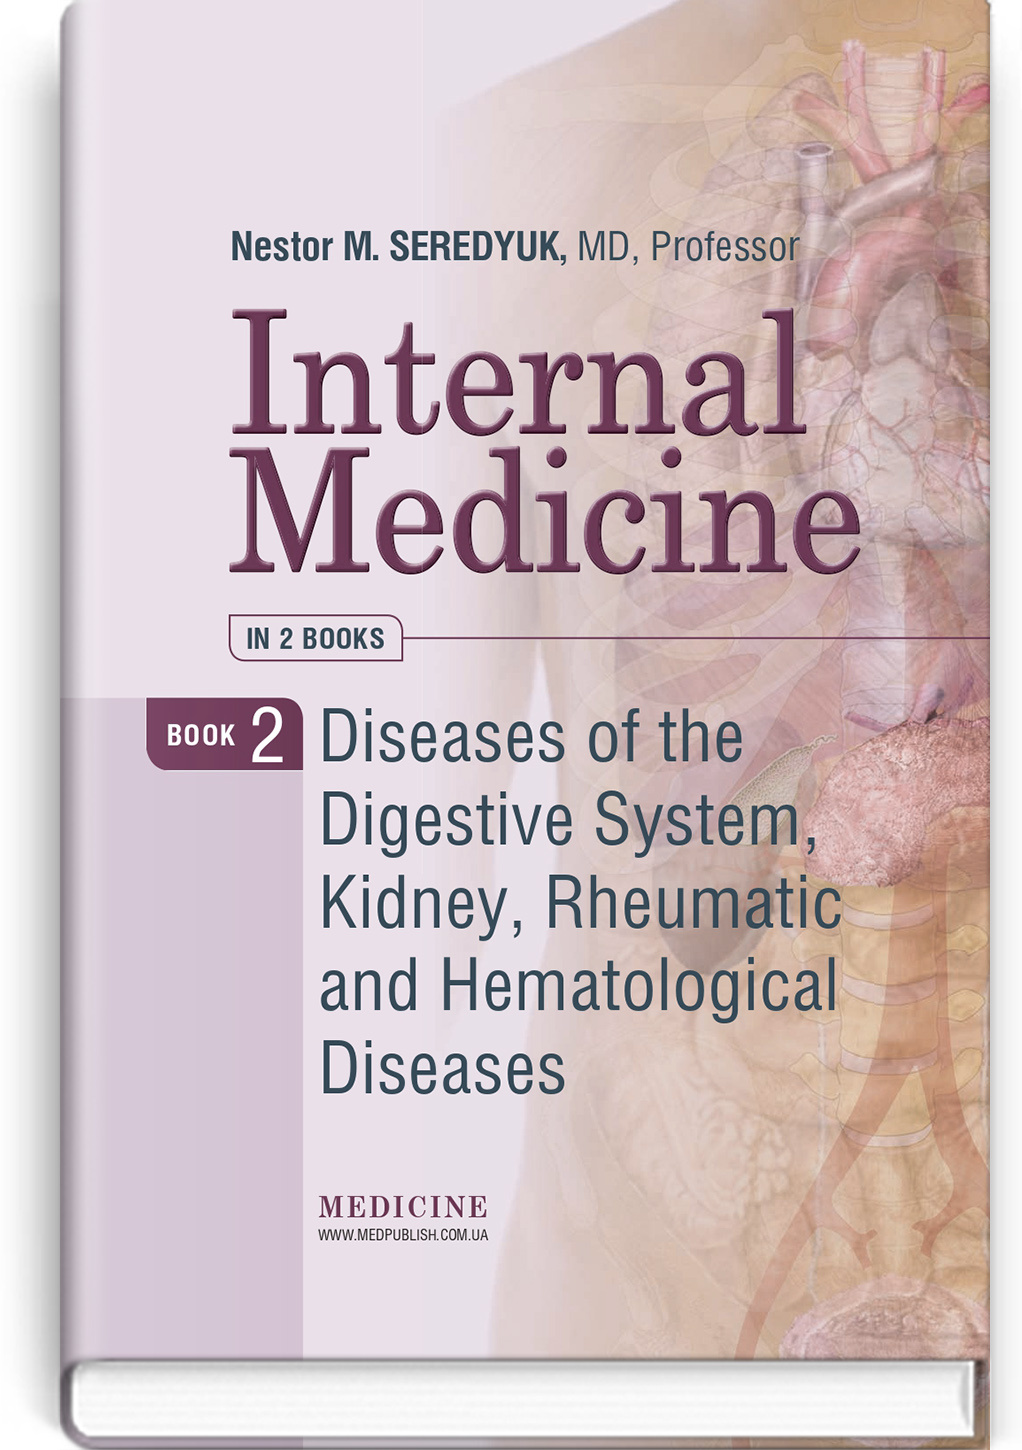 Internal Medicine: in 2 books. Book 2. Diseases of the Digestive System, Kidney, Rheumatic and Hematological Diseases: textbook. Автор — I.P. Vakaliuk, R.I. Yatsyshyn, M.M. Ostrovskyy, V.N. Serediuk, S.V. Fedorov, O.Z. Skakun, M.B. Grynovska, N.L. Glushko, T.V. Naluzhna, N.M. Haliuk, R.V. Nesterak, R.V. Denina, M.O. Vatseba, V.I. Sovtus, L.R. Petrovska, D.A. Volynskyi, M.V. Bielinskyi, V.Yu. Vyshyvanyuk, O.I. Varunkiv, A.-K.B. Sikora, V.O. Petryna, I.T. Gavrysh. 